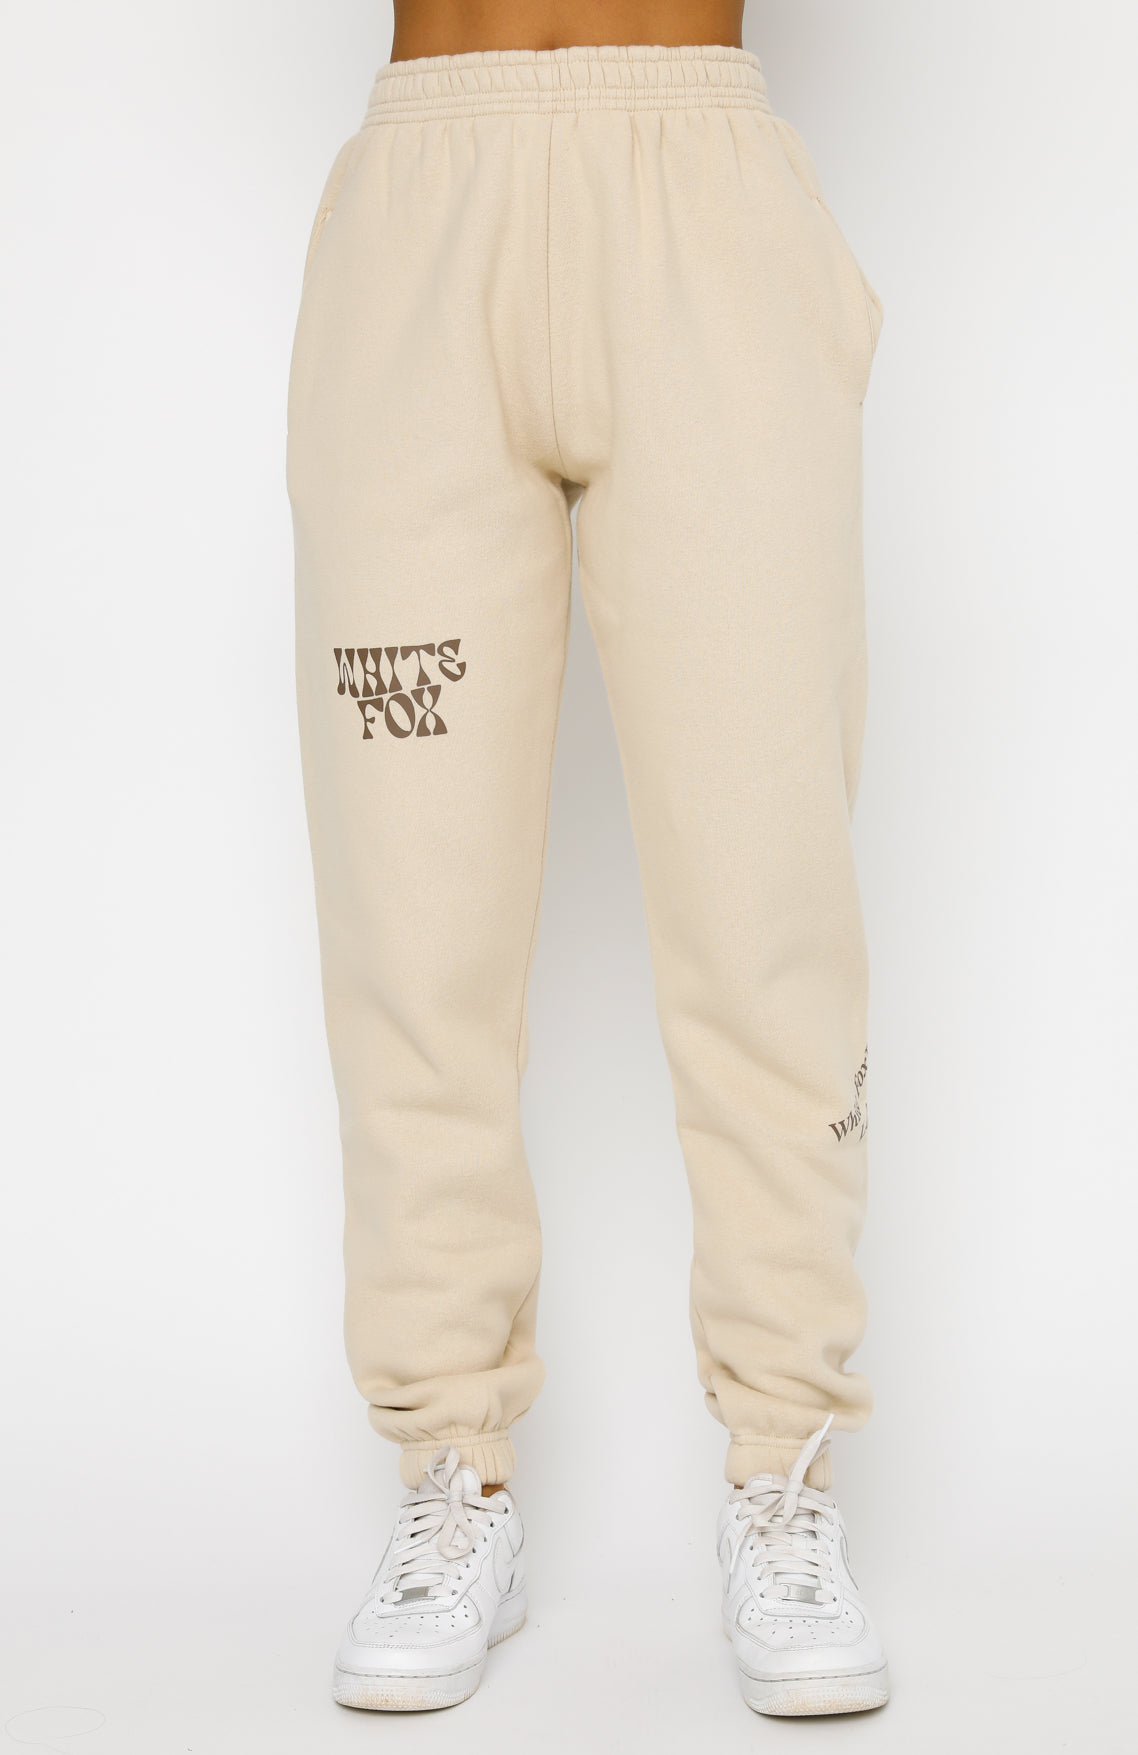 Can't Get Enough Sweatpants Sand | White Fox Boutique US